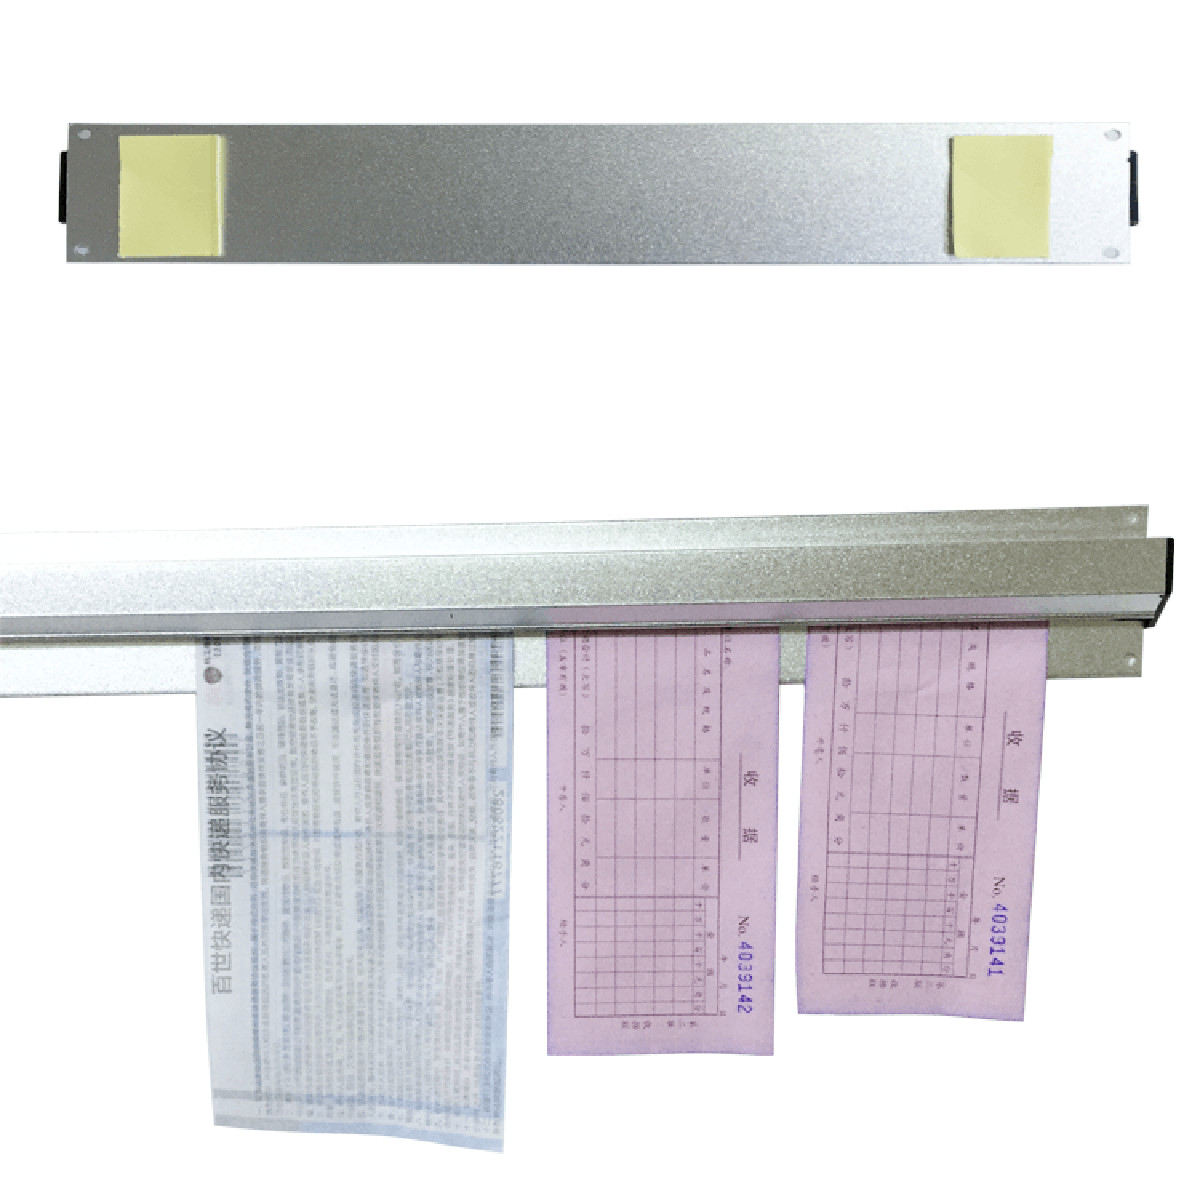 Paper-Rail-Tab-Grabber-Bar-Receipt-Cafe-Order-File-Holder-Bar-Organiser-Letter-Grip--Bil-1387905-9